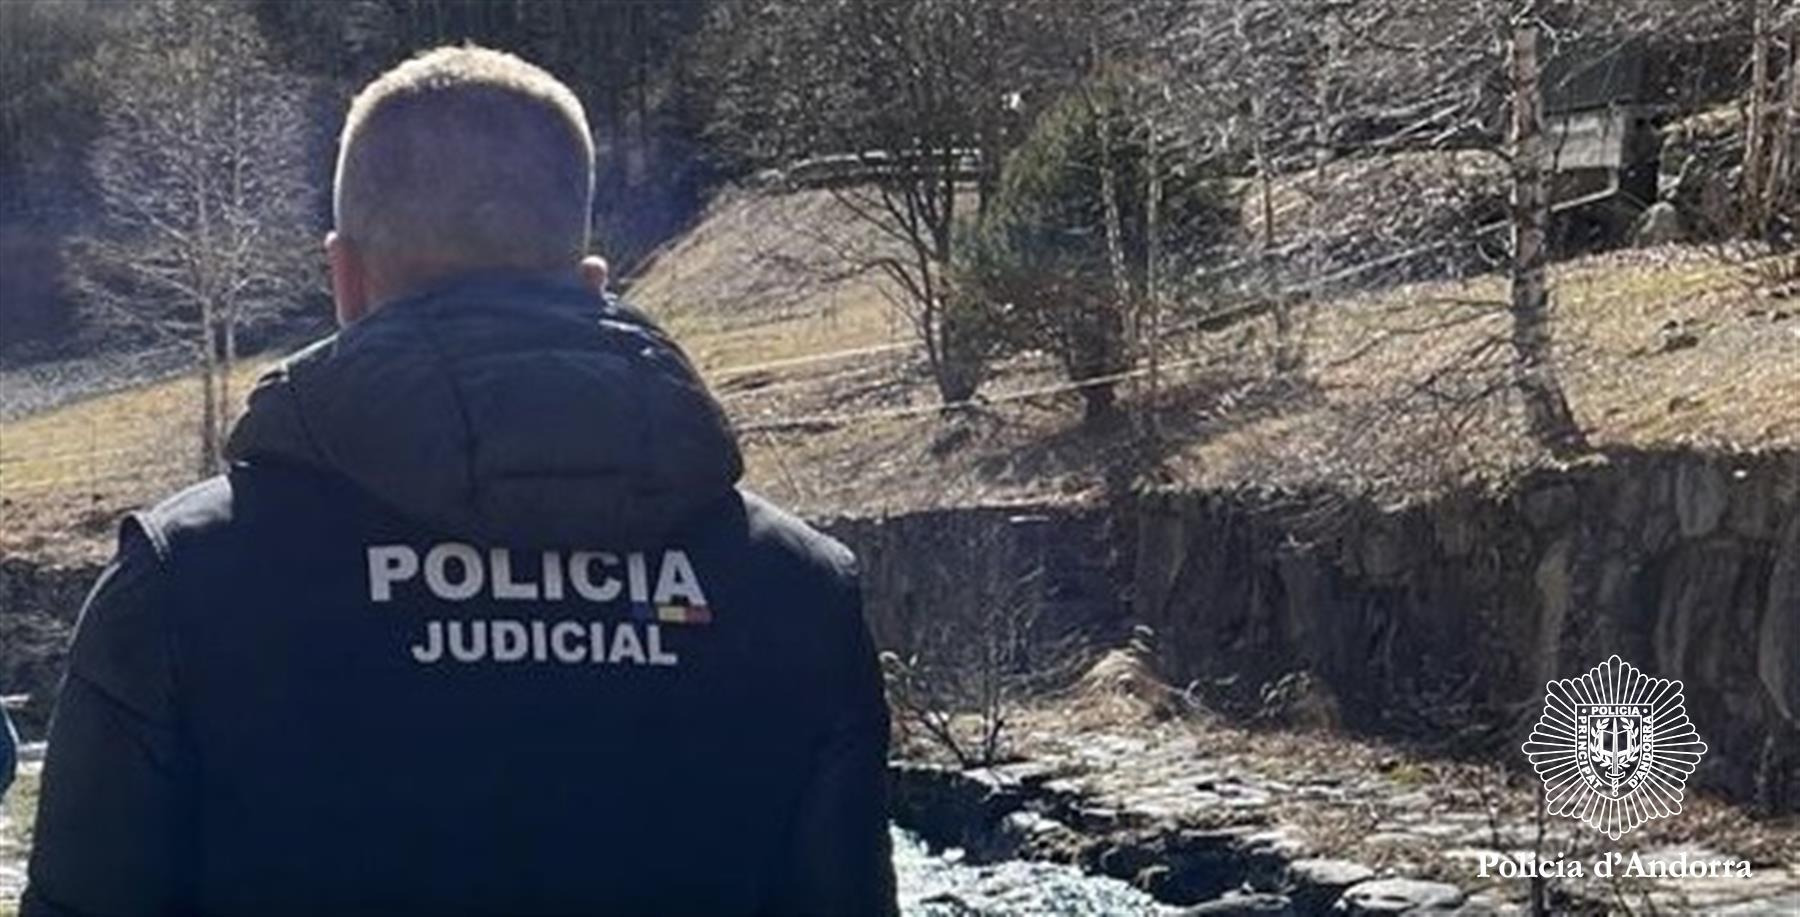 La investigació policial determina que l’home trobat sense vida a Arinsal era un turista espanyol de 41 anys